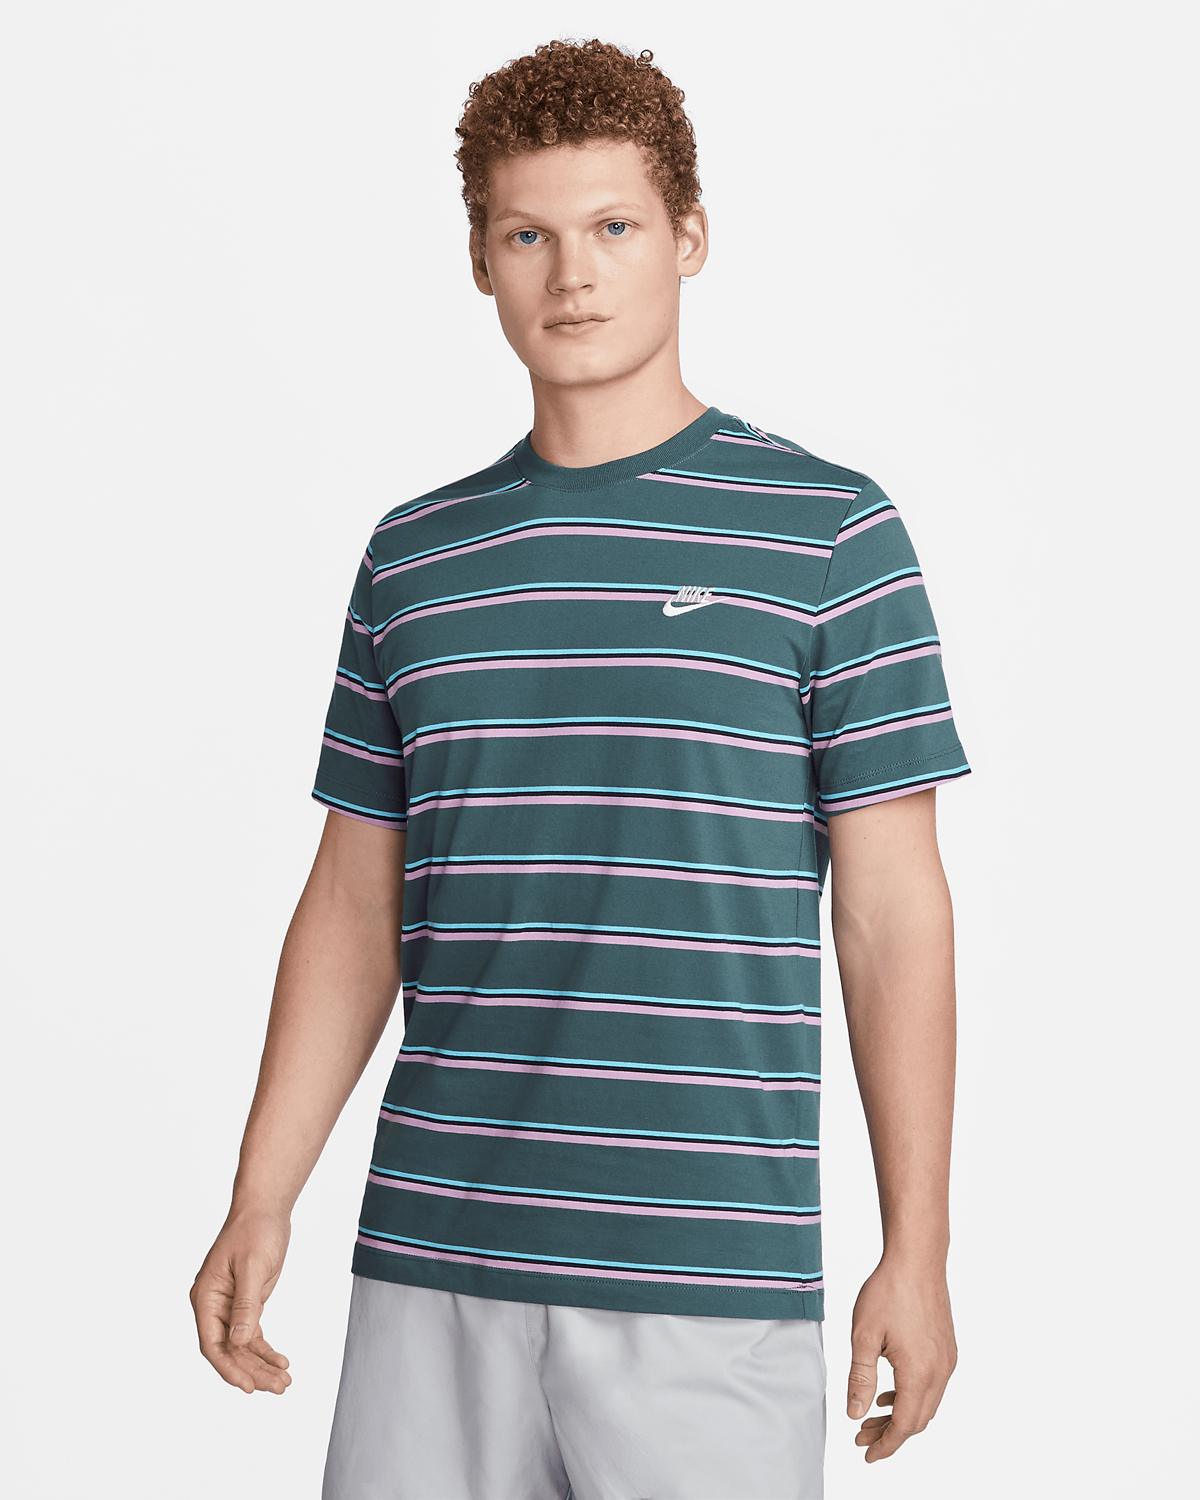 Nike-Sportswear-Striped-T-Shirt-Faded-Spruce